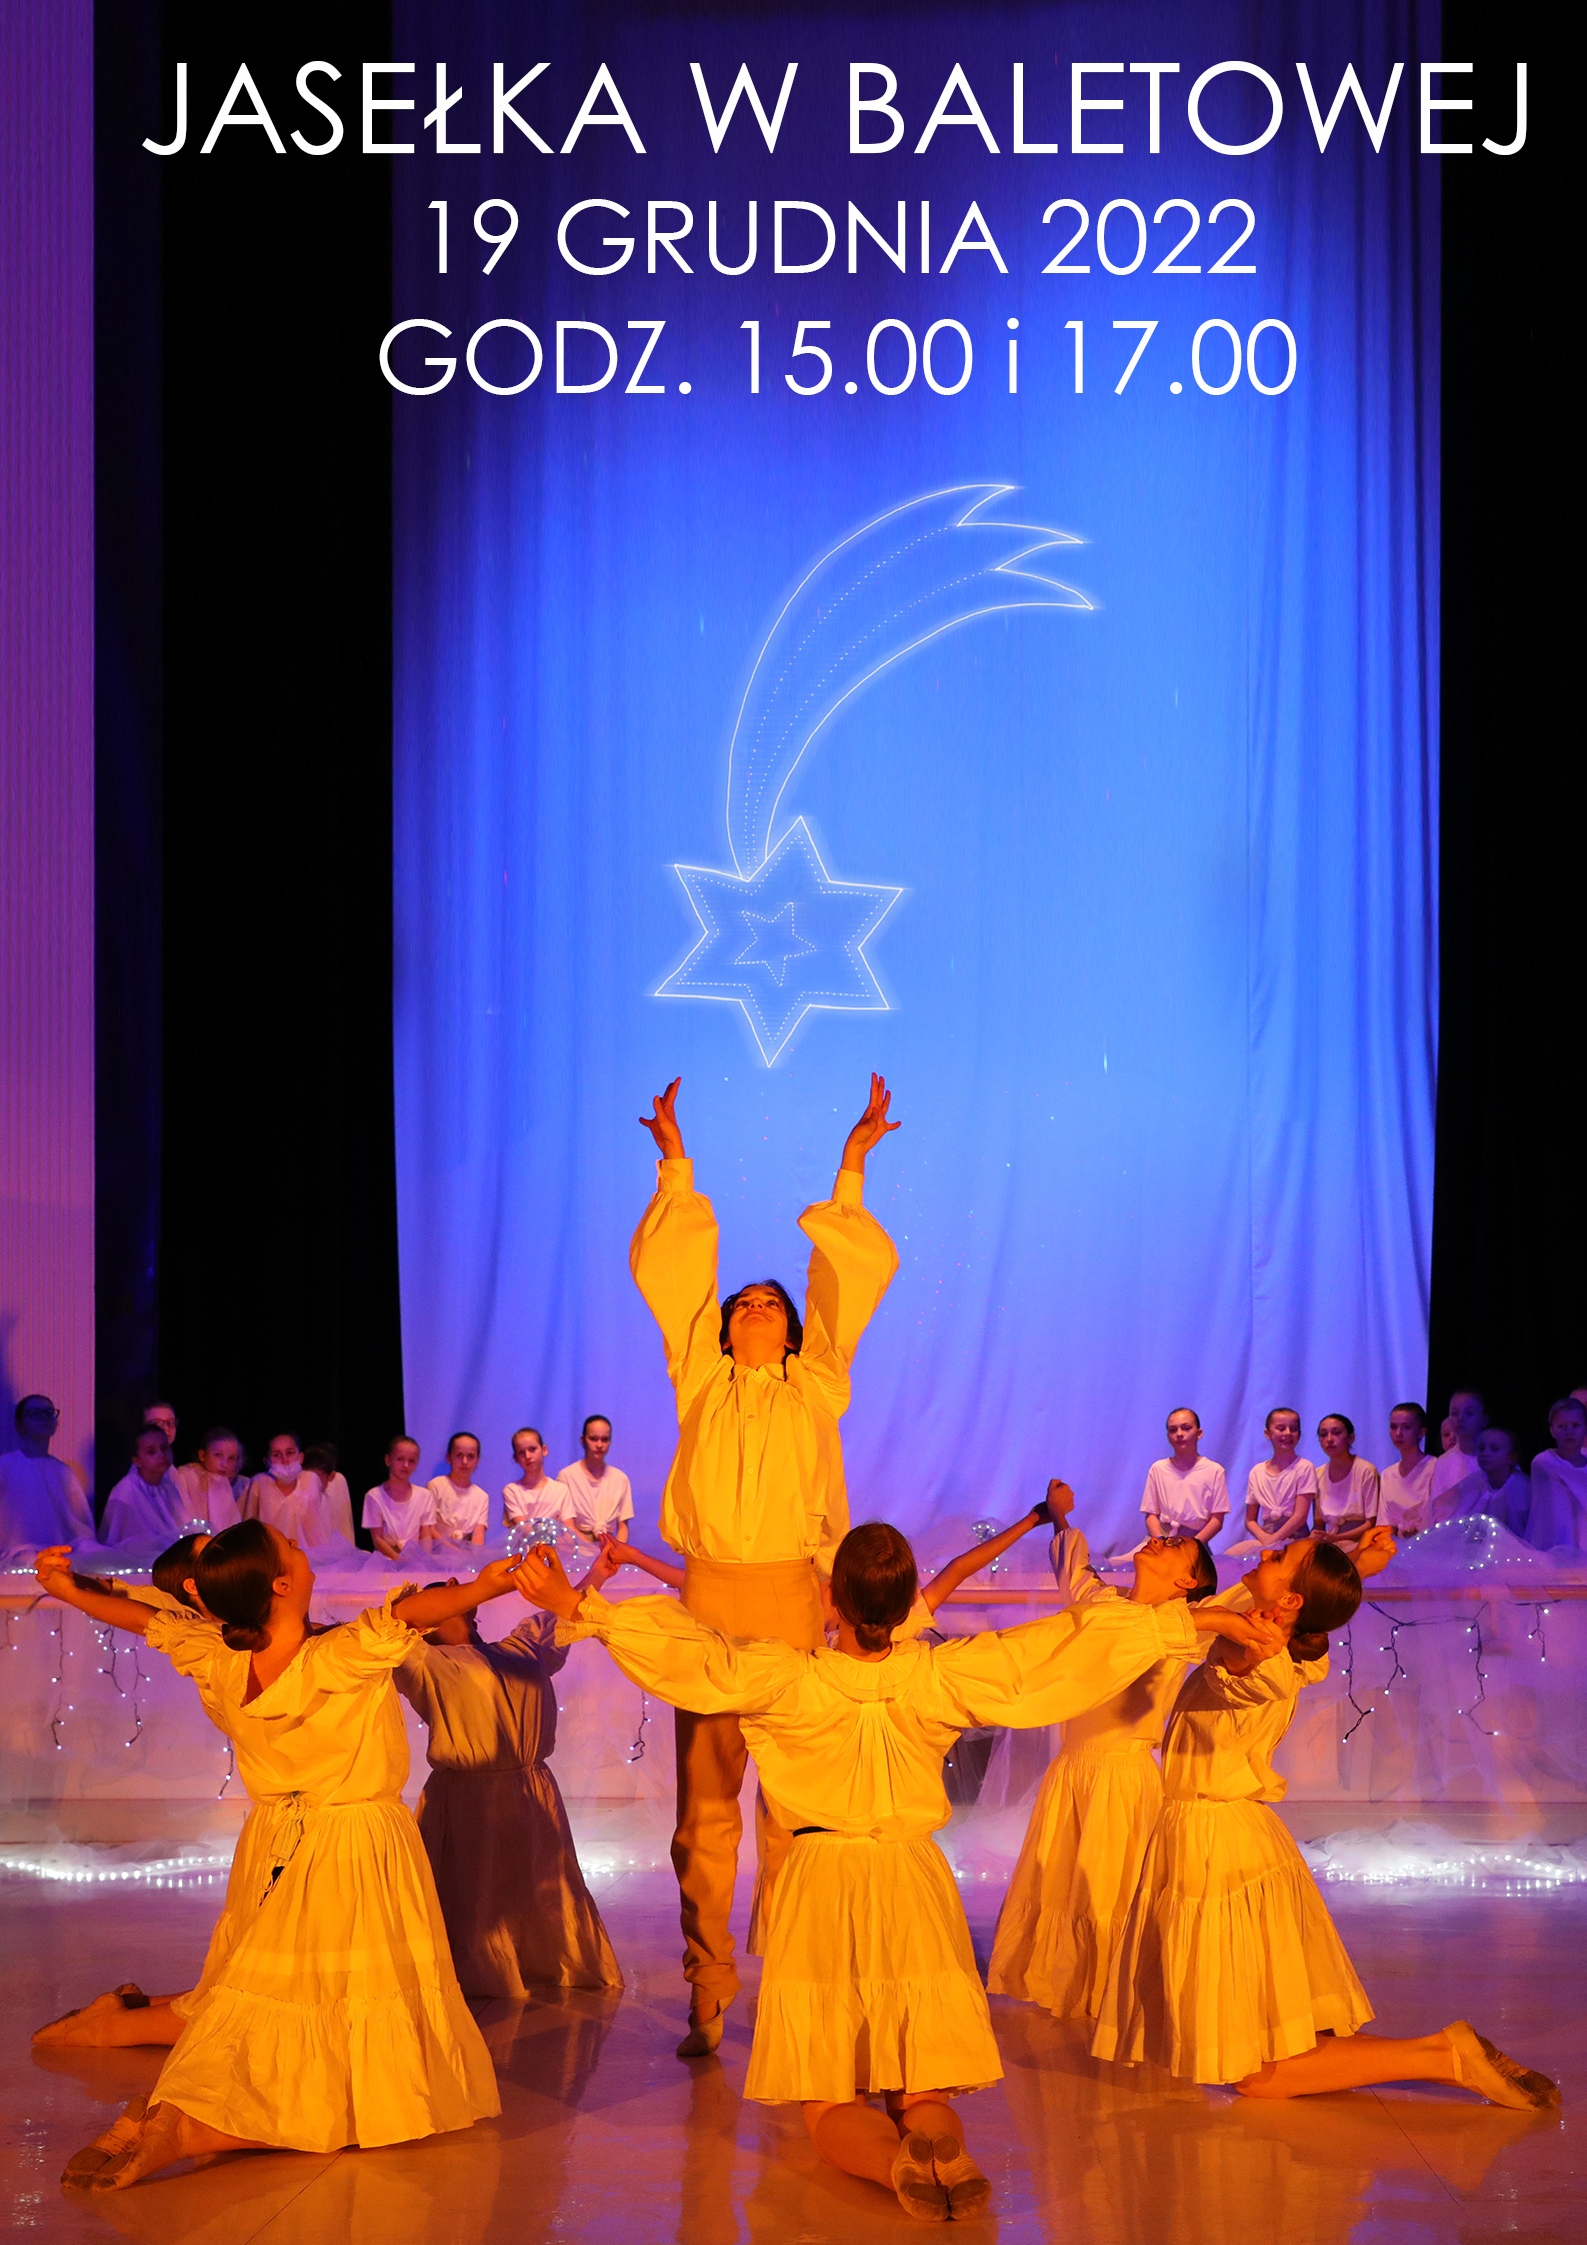 Układ taneczny, na pierwszym planie stoi tancerz z uniesionymi ku górze rękoma, wokół klęczą tancerki z rozłożonymi rękoma, w tle tancerki po prawej i lewej stronie sceny, u góry na niebieskim tle symbol Gwiazdy Betlejemskiej, nad nim napis Jasełka w baletowej 19 grudnia 2022 godz 15:00 i 17:00.